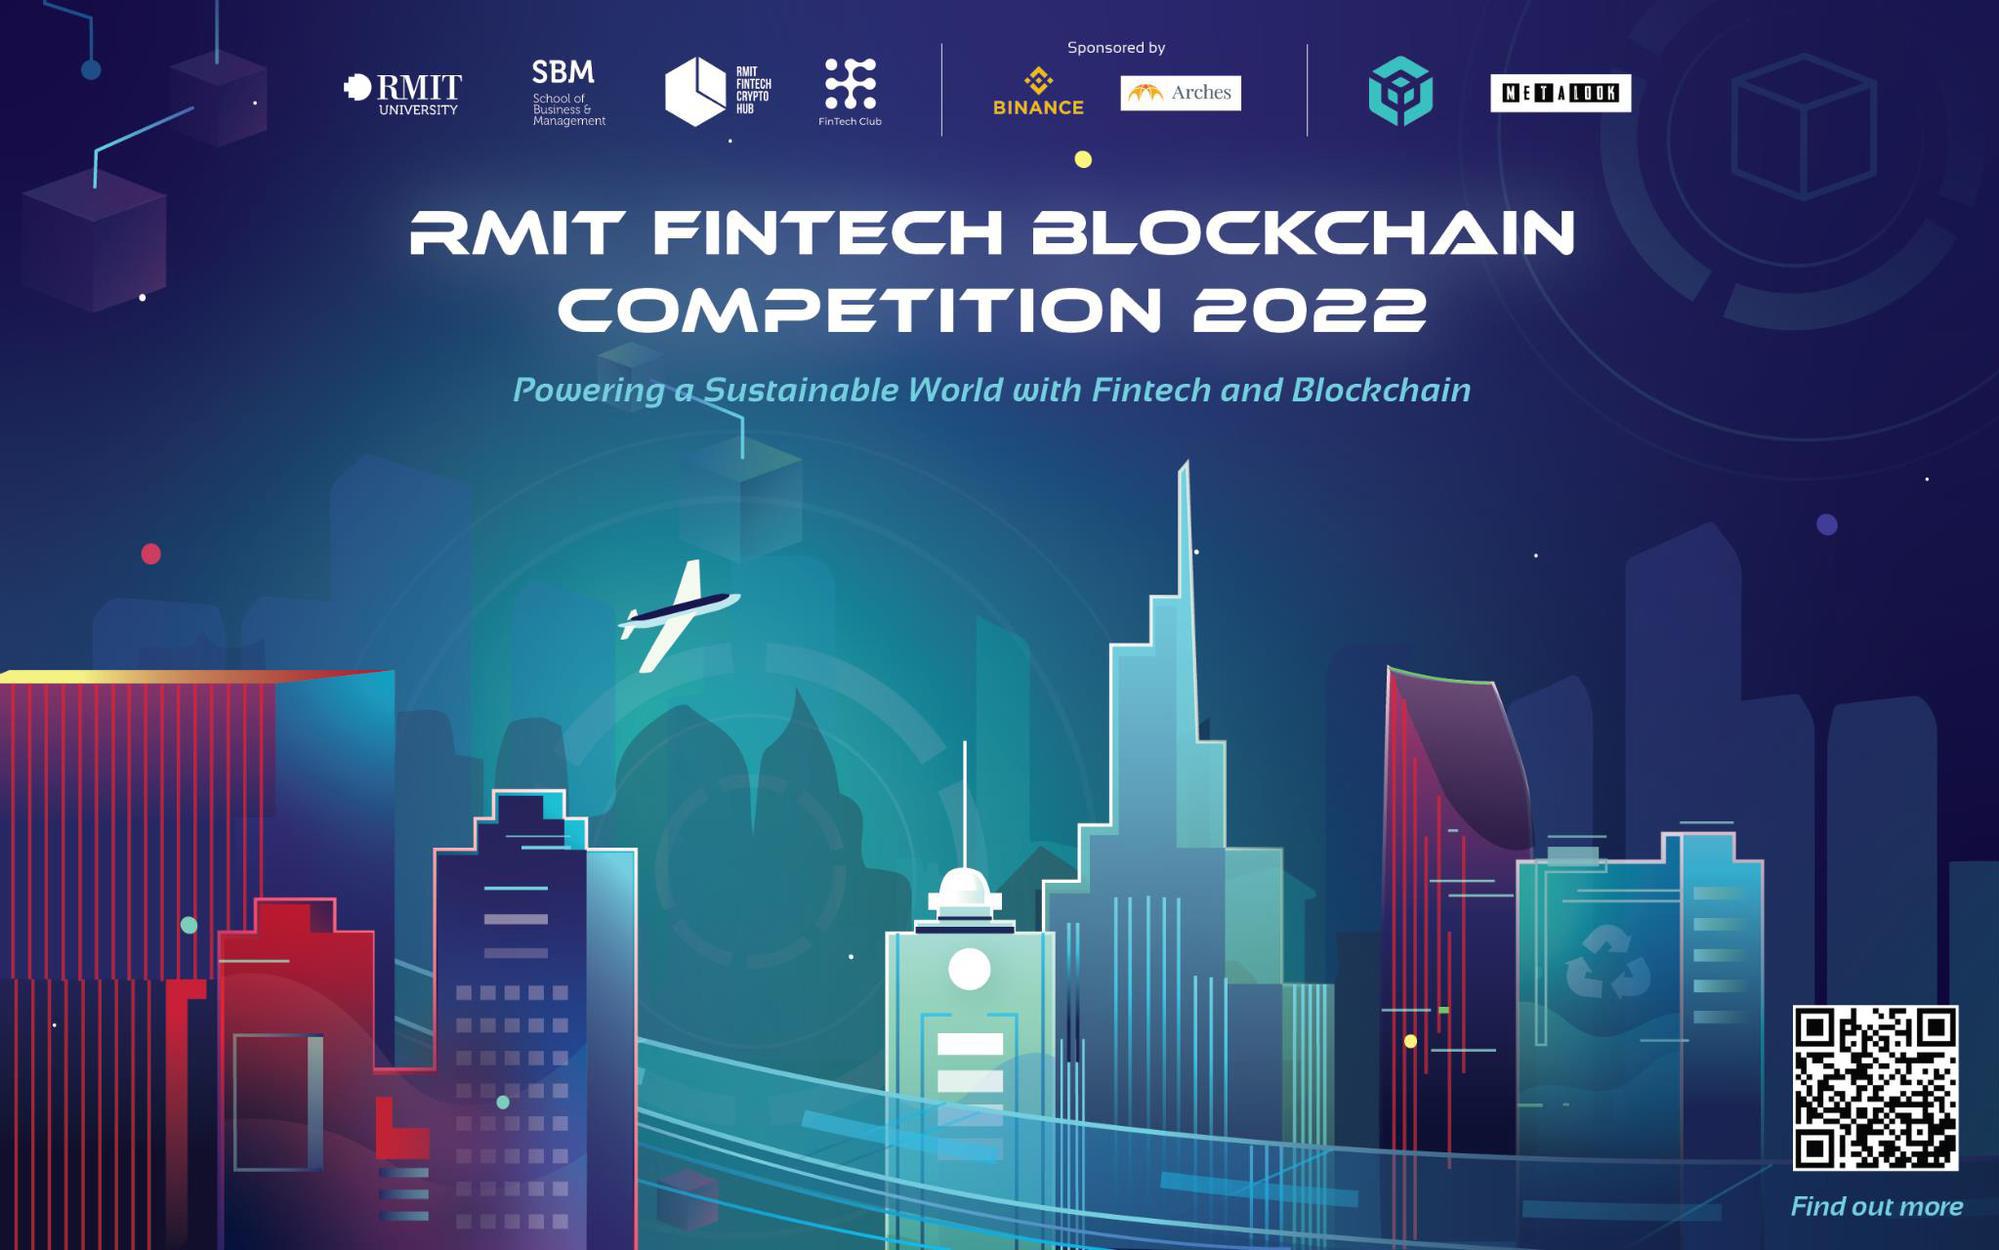 RMIT khởi động cuộc thi Fintech Blockchain mùa 2 - Sân chơi công nghệ dành cho giới trẻ